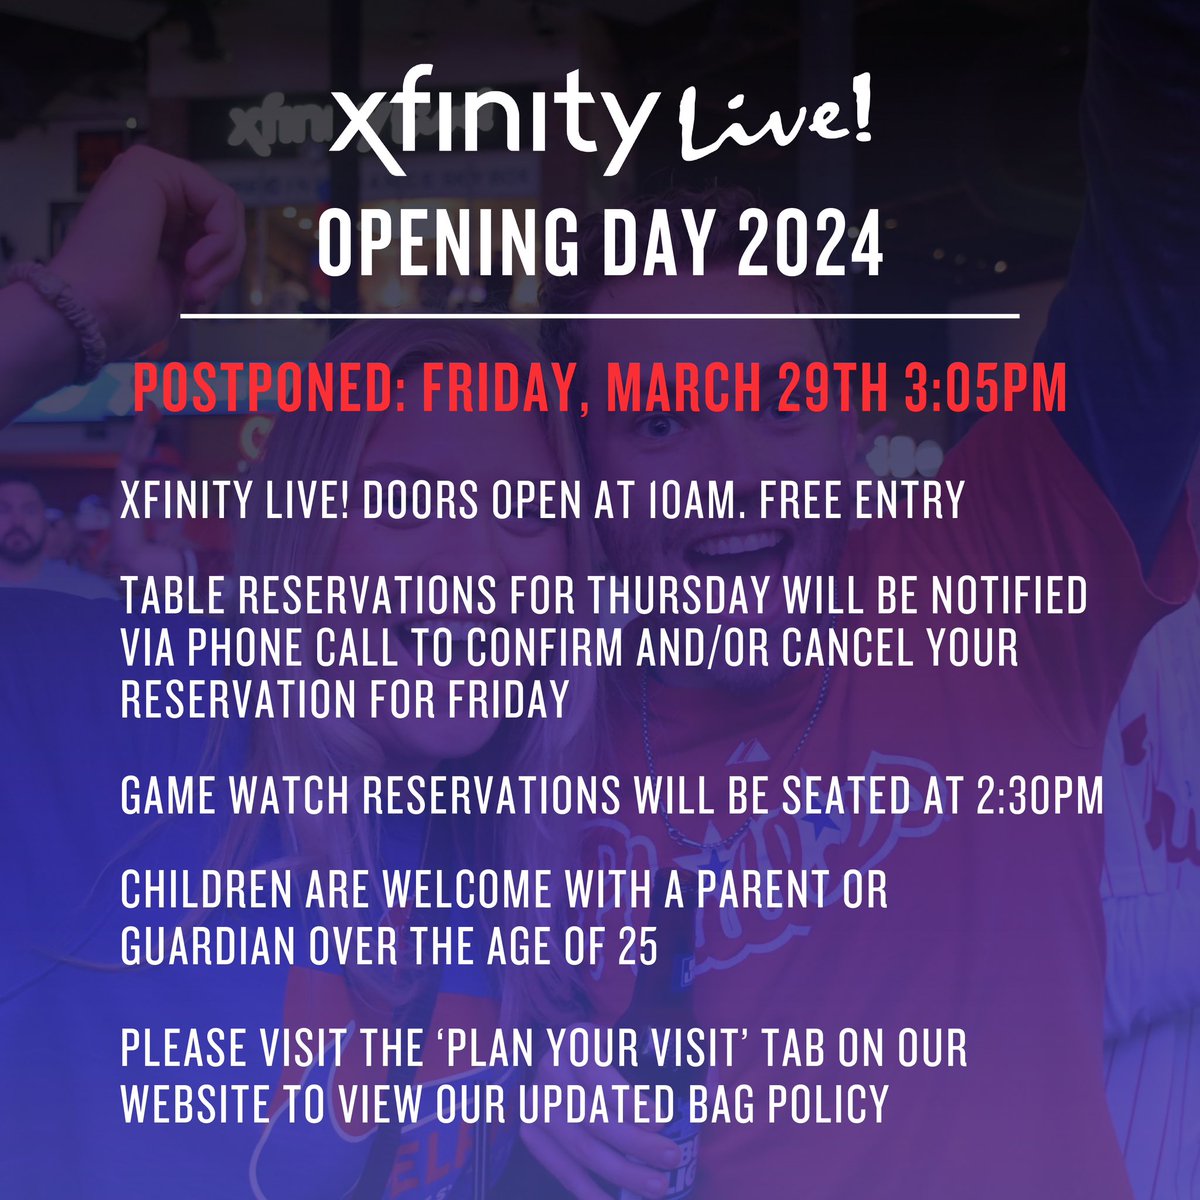 Xfinity Live! (@XfinityLive) on Twitter photo 2024-03-27 22:29:12